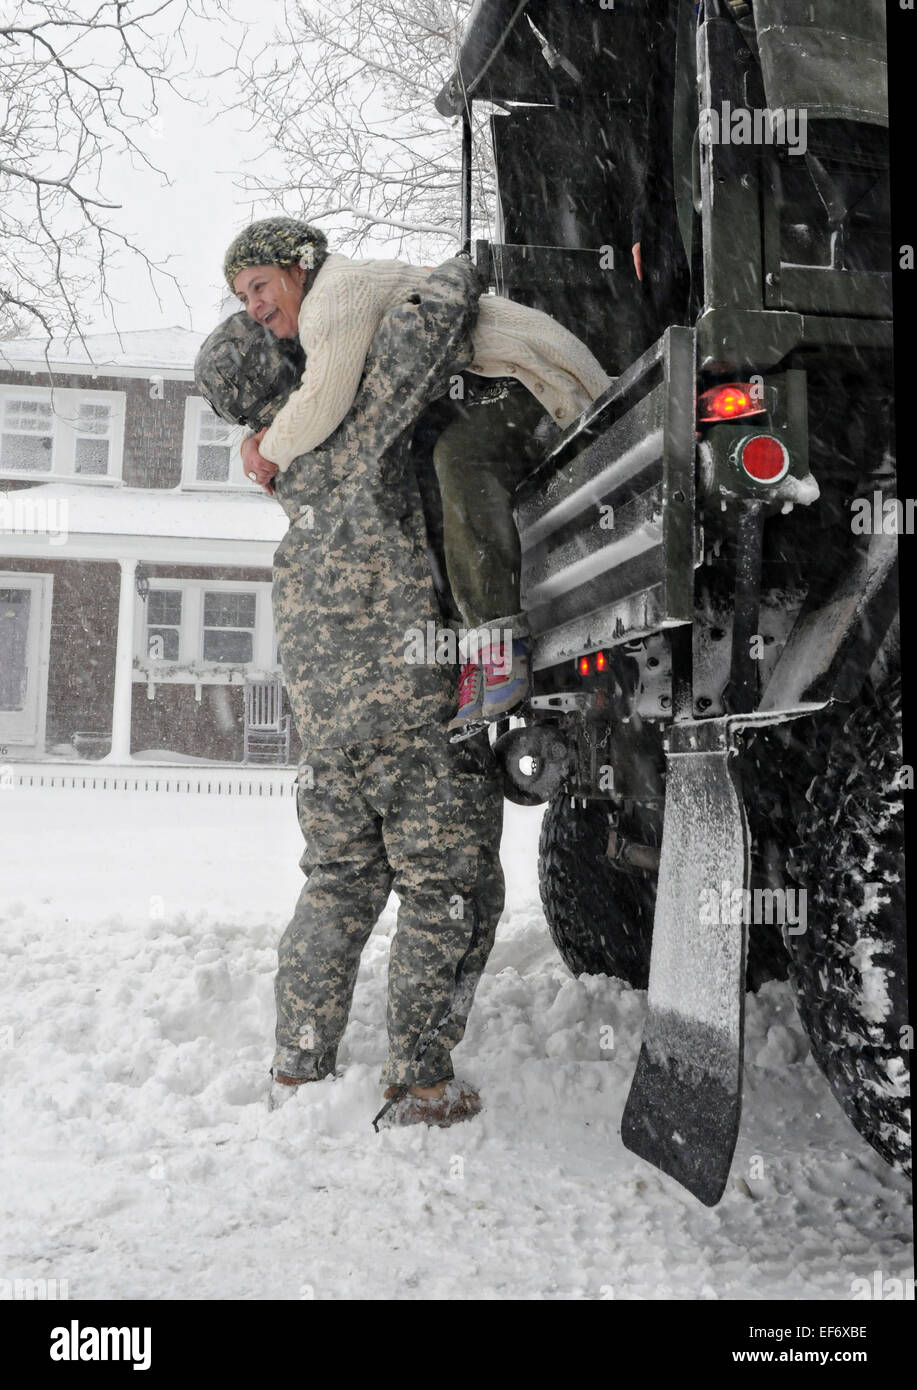 Un soldat de l'Armée américaine du Massachusetts Army National Guard aide un brin pendant l'évacuation des résidents comme Juno tempête hivernale arrête le nord-est des États-Unis avec beaucoup de neige et des vents forts, 27 janvier 2015 à Scituate, Massachusetts. Banque D'Images